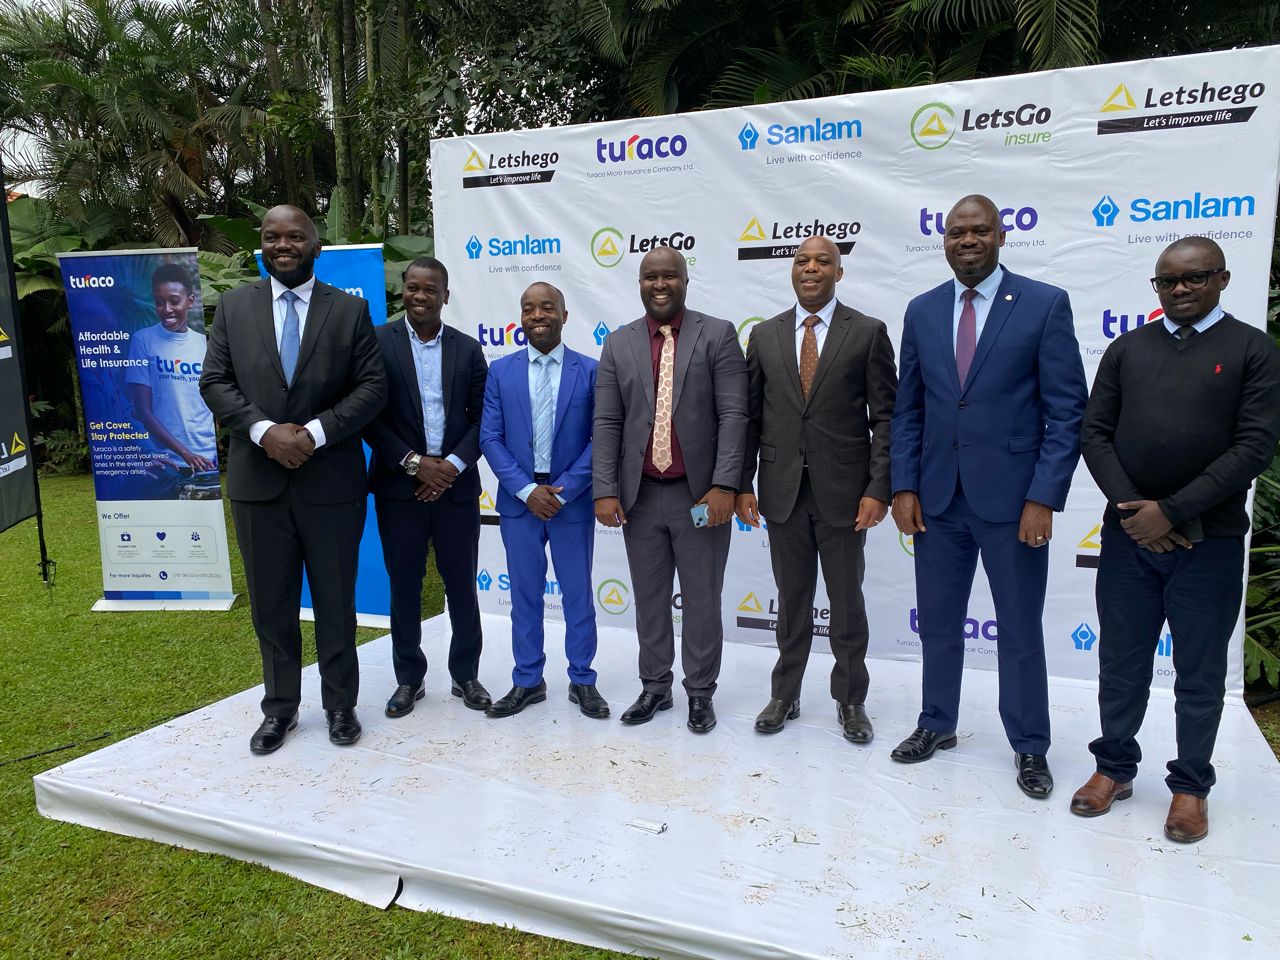 Letshego Uganda, Turaco, Sanlam partner to launch insurance product